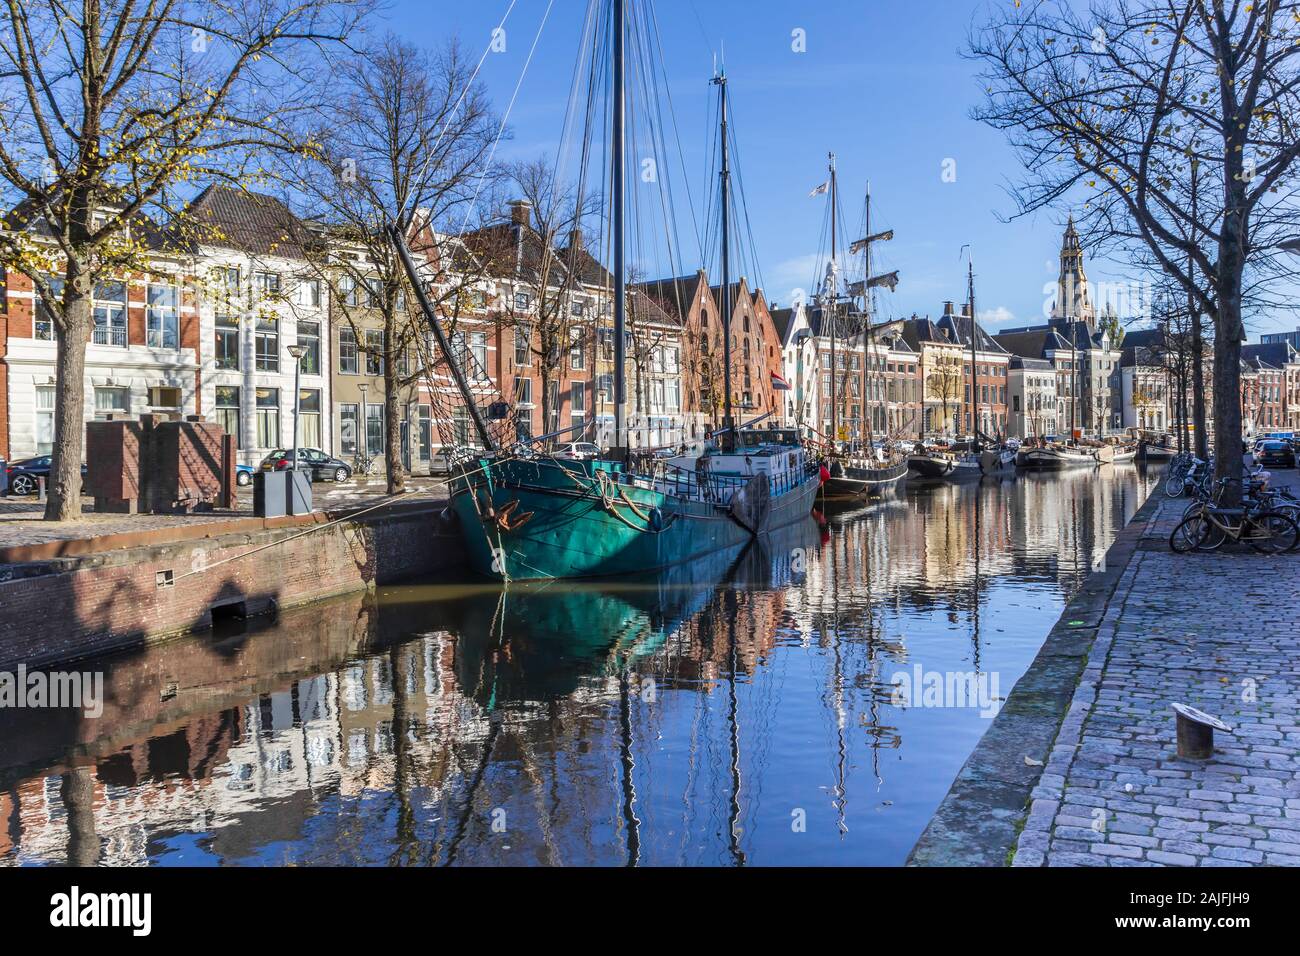 Les navires historiques dans le Hoge der aa canal de Groningen, Pays-Bas Banque D'Images